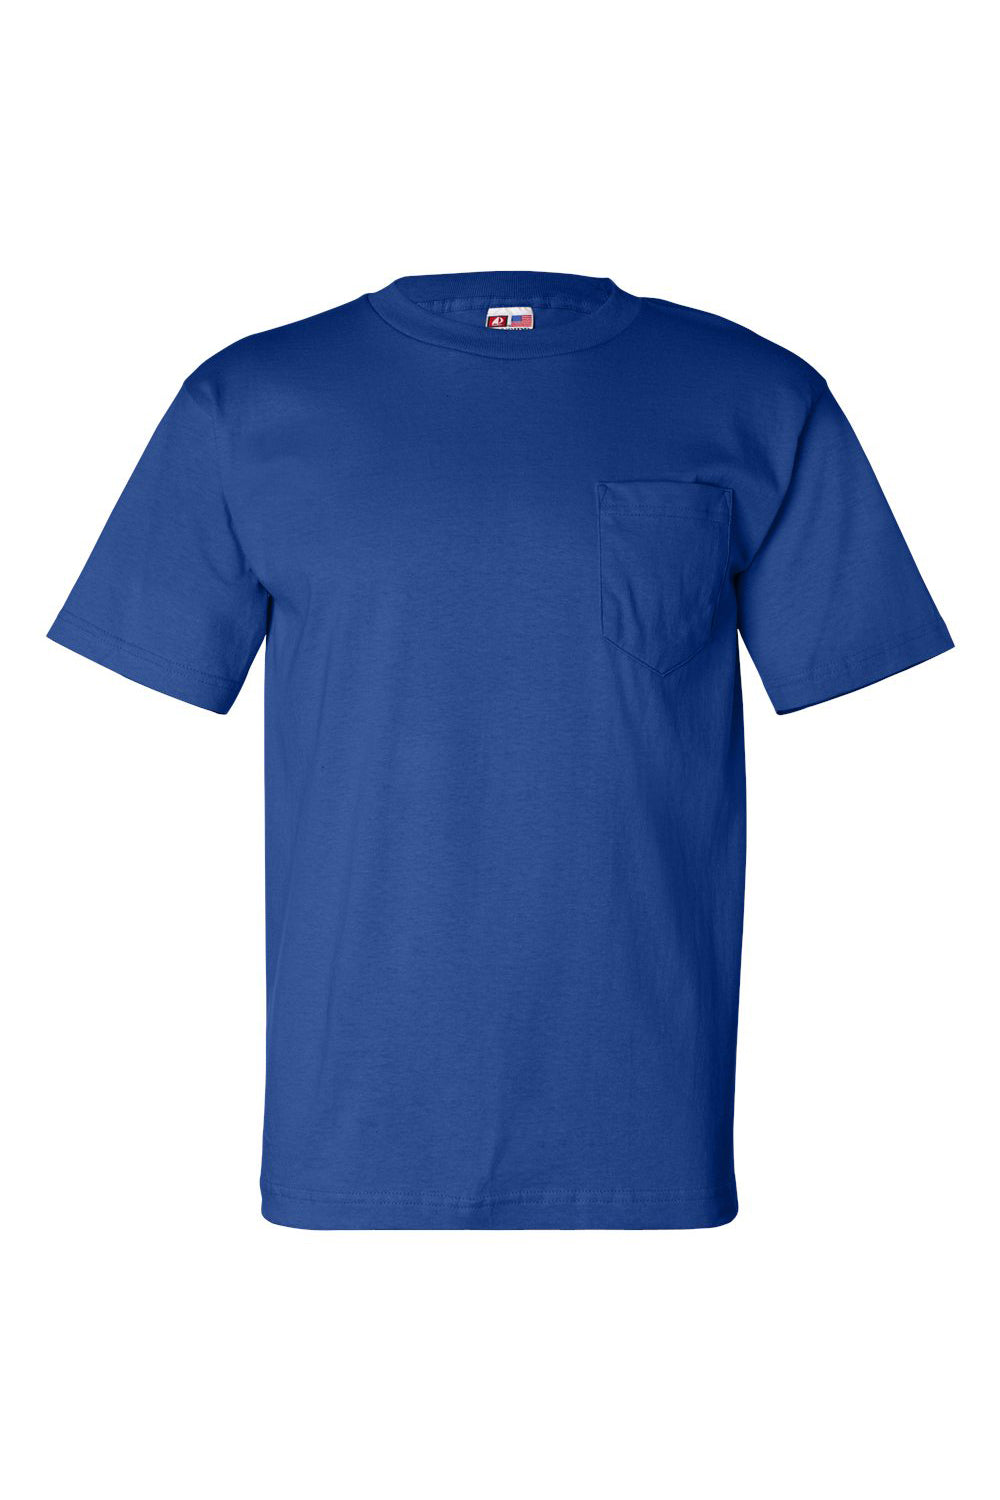 Bayside BA7100 Mens USA Made Short Sleeve Crewneck T-Shirt w/ Pocket Royal Blue Flat Front